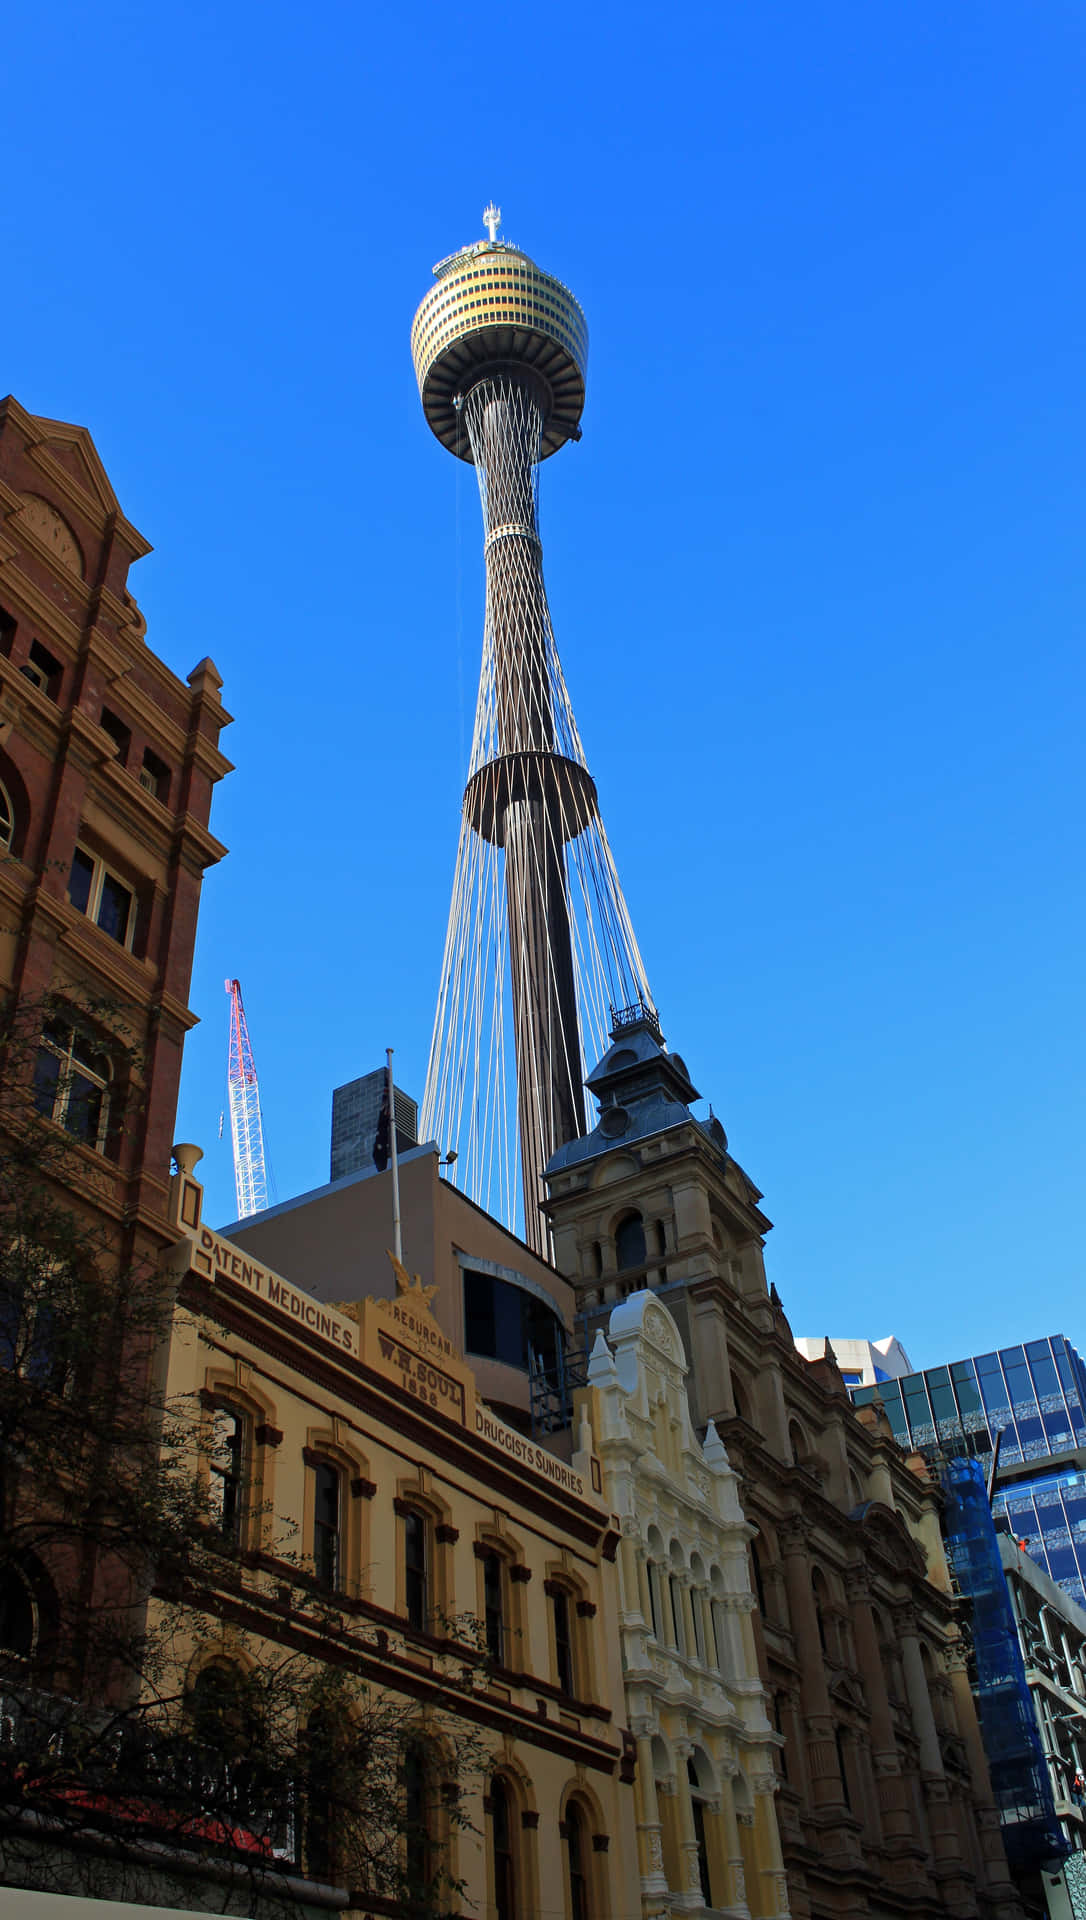 Sydney Tower Eye Against Blue Sky Wallpaper